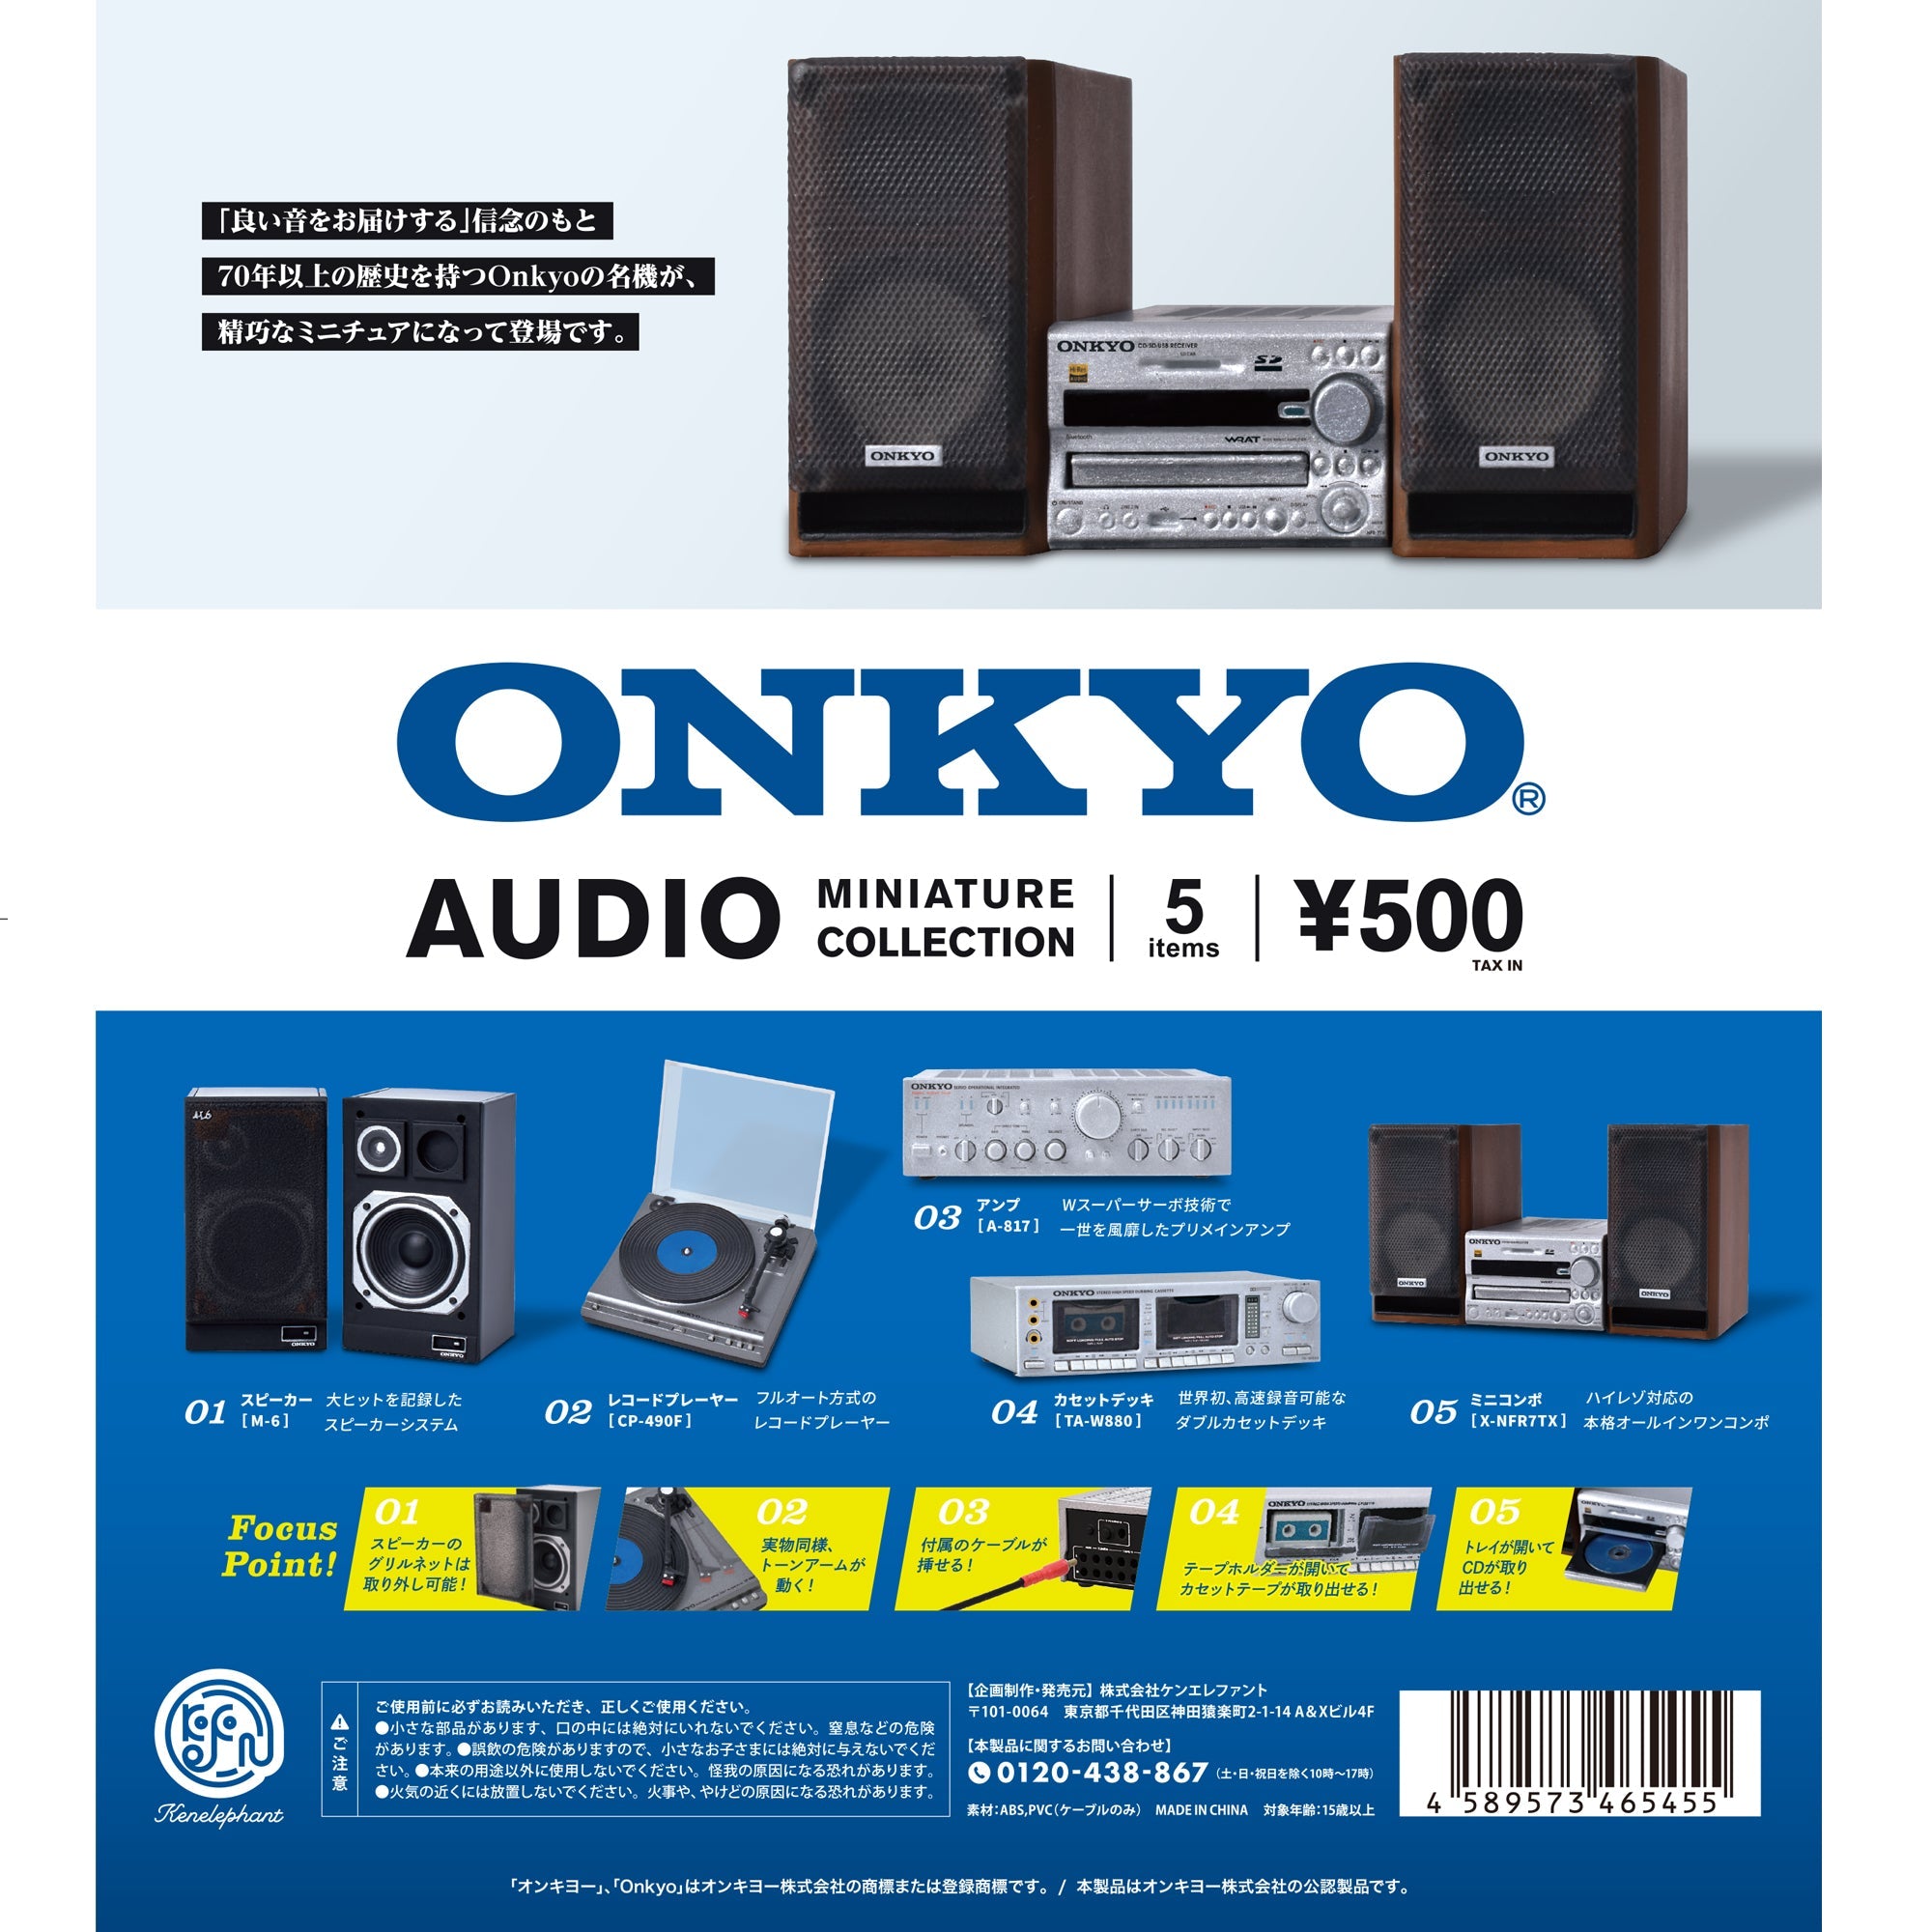 ONKYO オンキョー ミニコンポ X-NFR7X オールインワン ハイレゾ対応